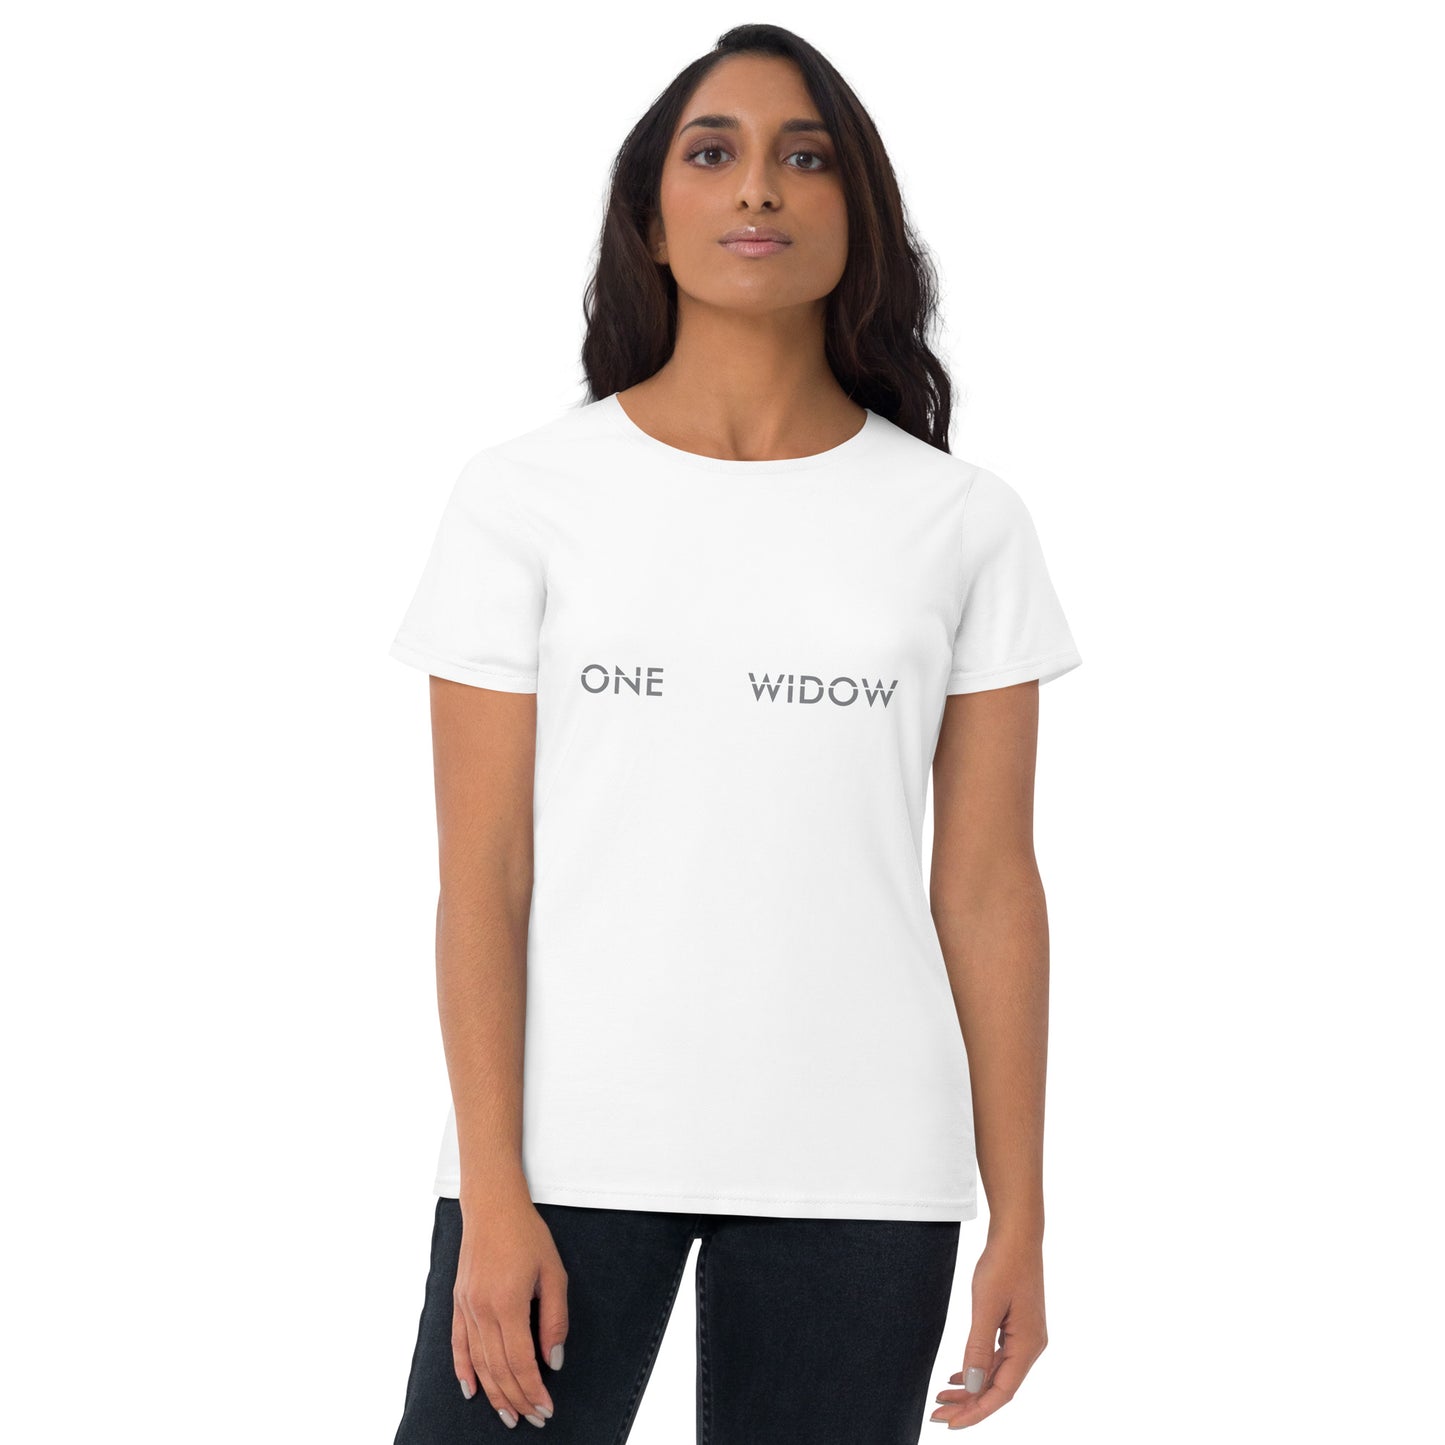 OneFitWidow Short Sleeve T-shirt